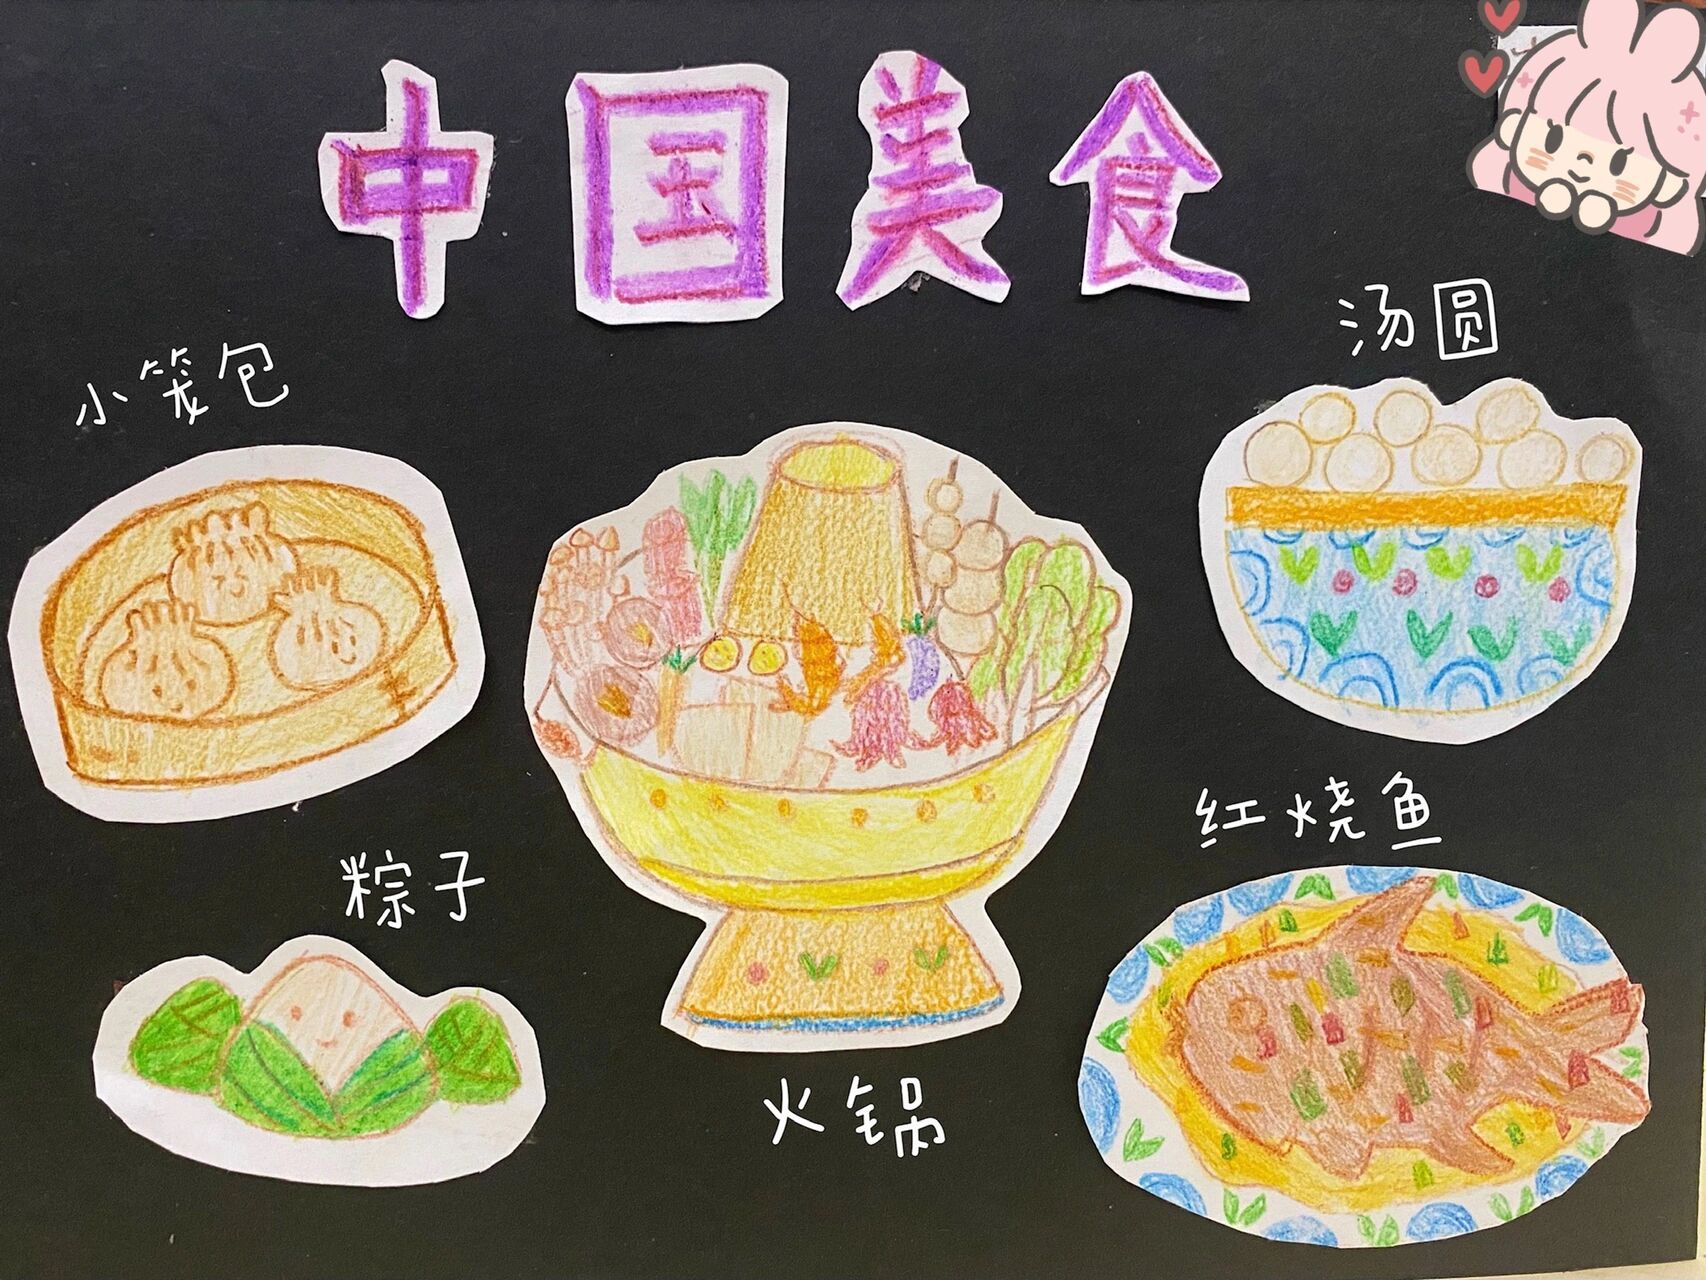 二年级语文下册《中国美食》小画报 女儿的课堂作业93 最爱的中国